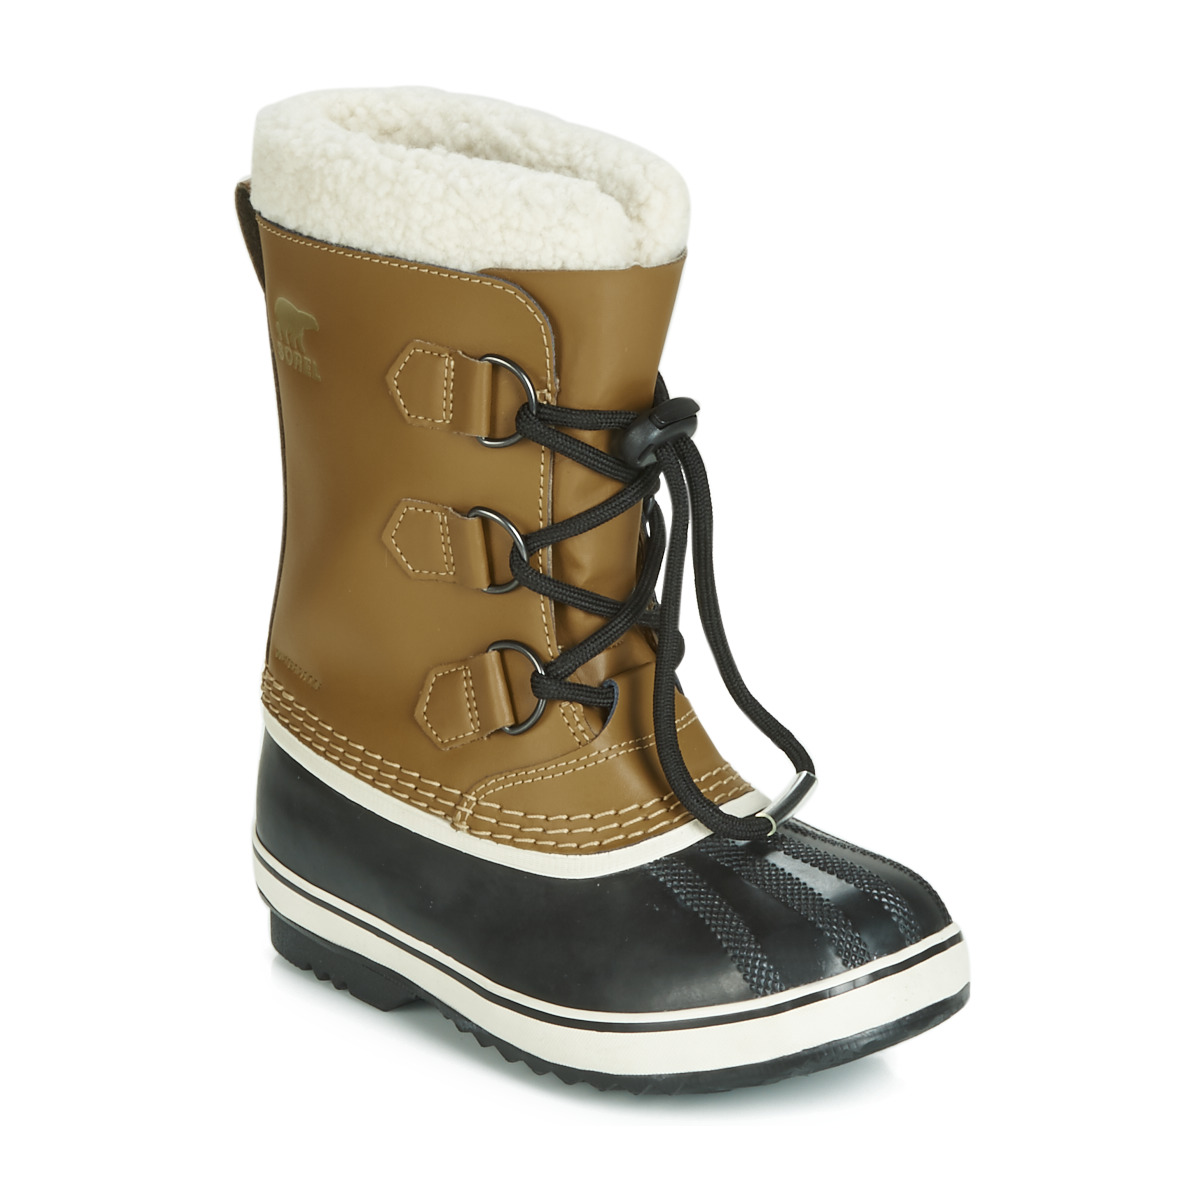 Sorel Snowboots - Maat 37 - Unisex - bruin/zwart/wit